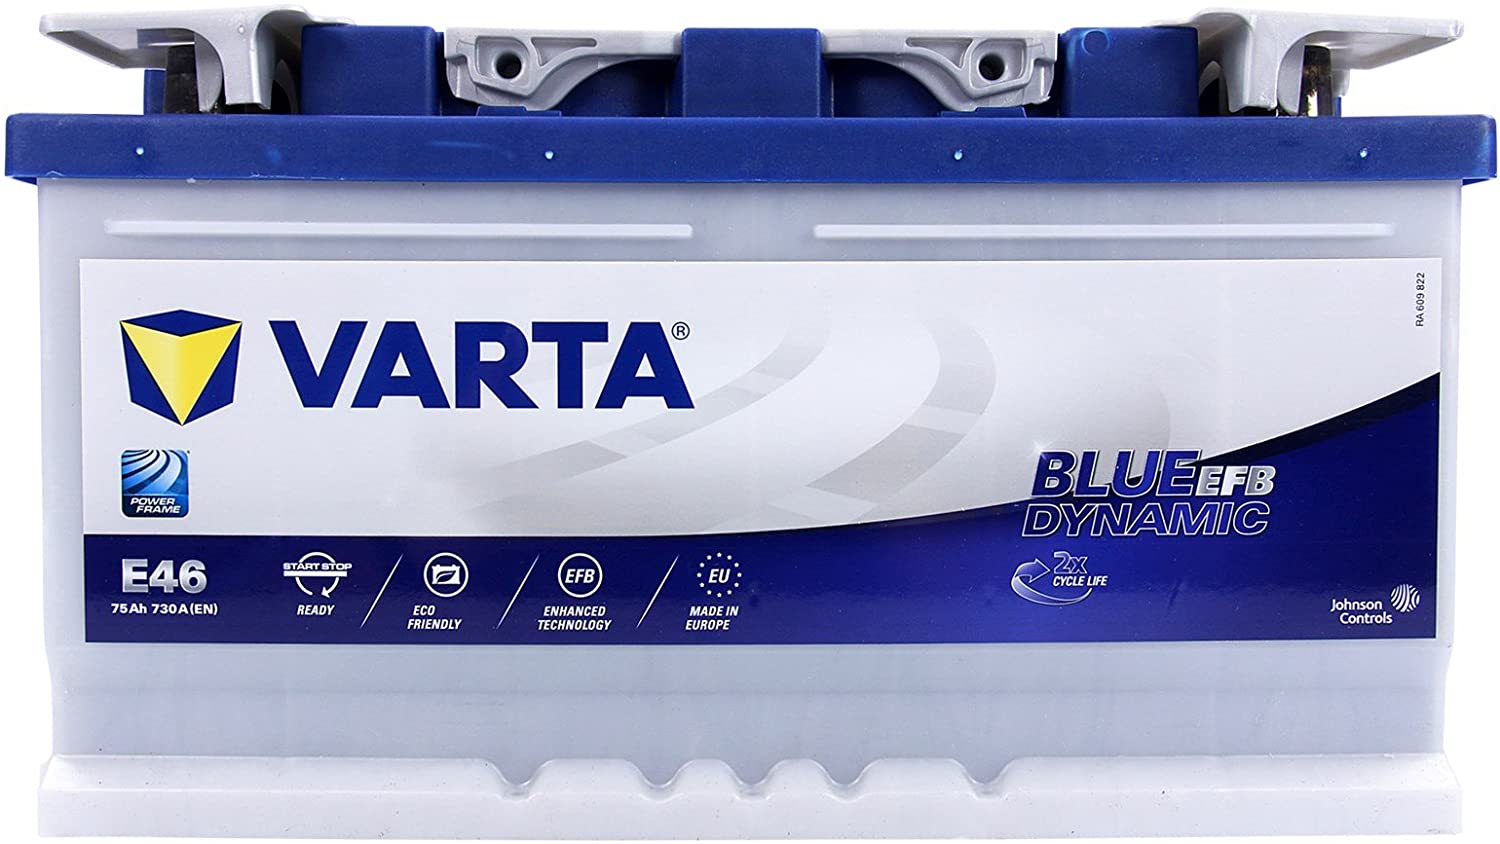 VARTA Blue Dynamic EFB 12V 60Ah N60 ab 93,00 € (Februar 2024